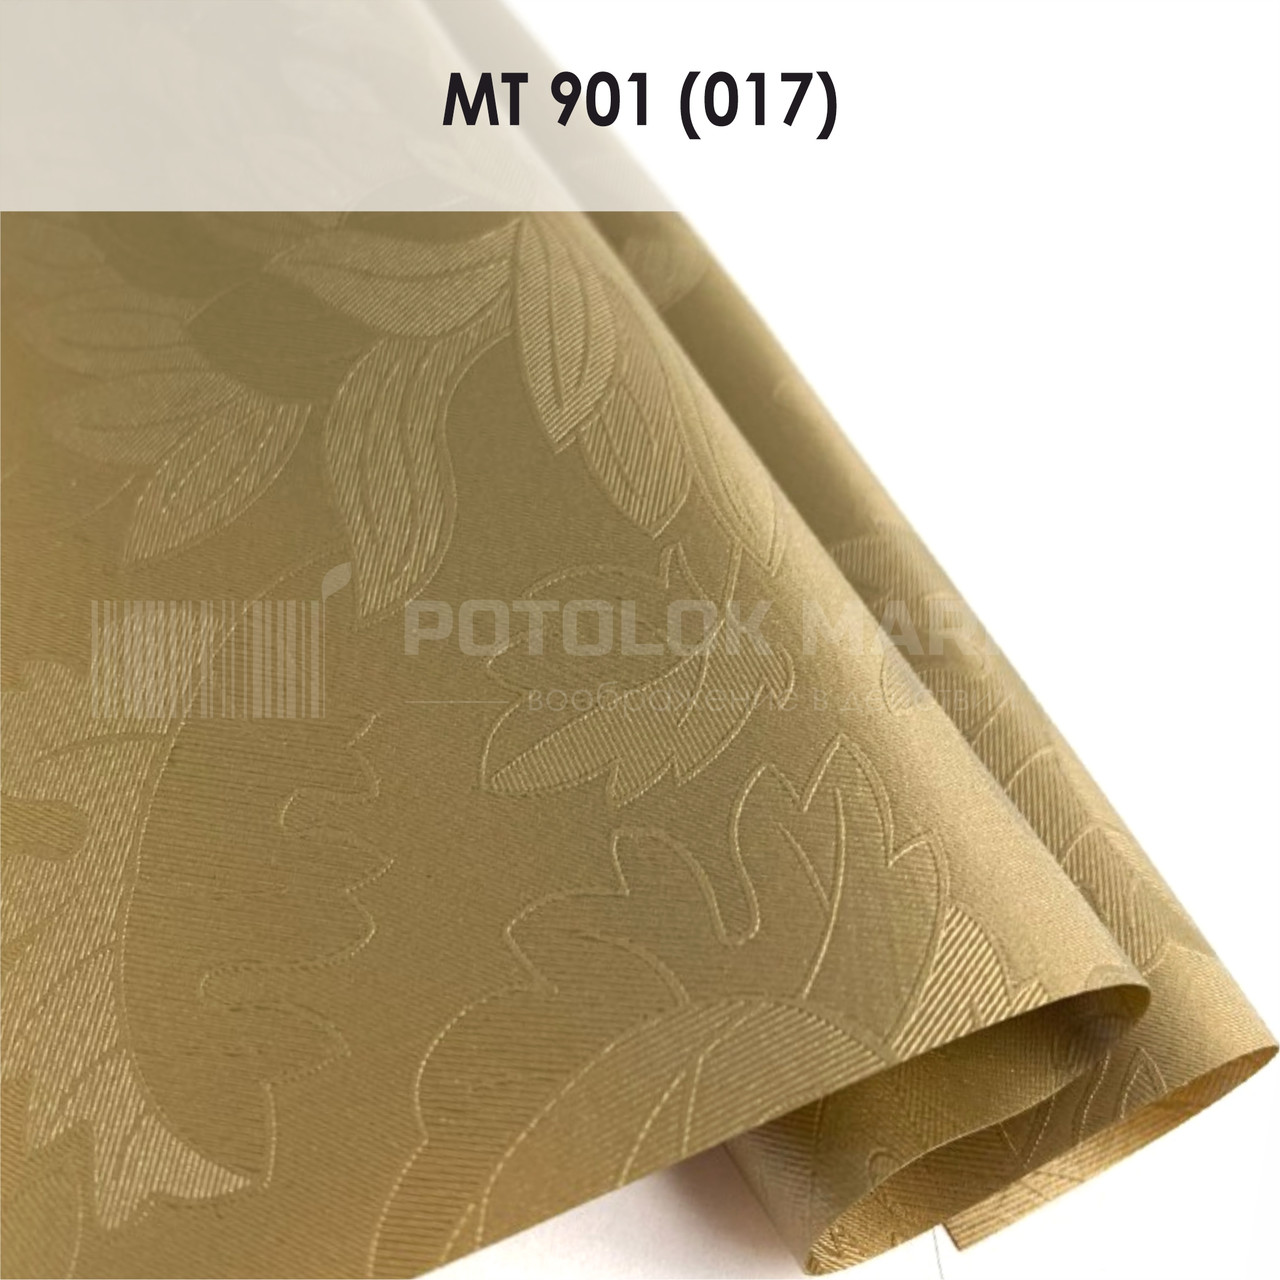 MT 901 (017) "Листочки" (ширина до 3,2 мп). Текстурна ПВХ плівка